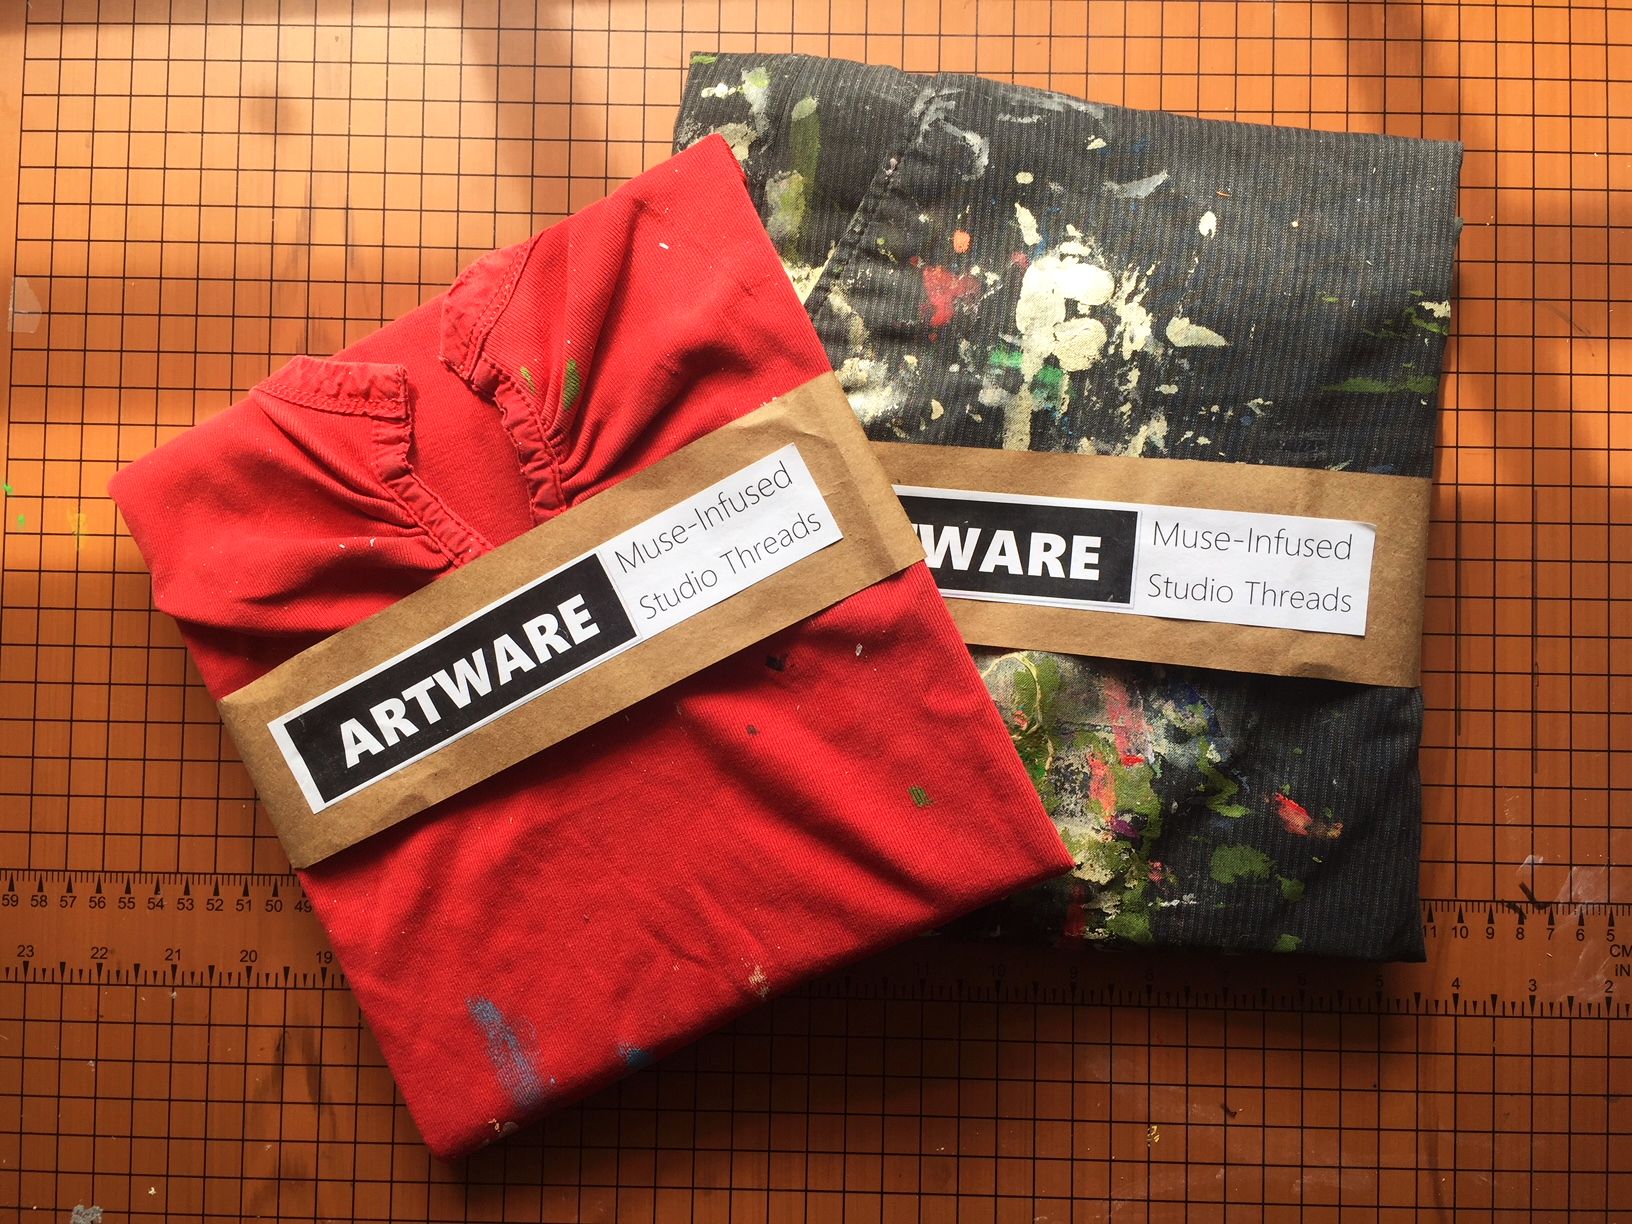 Artware packaging.jpg